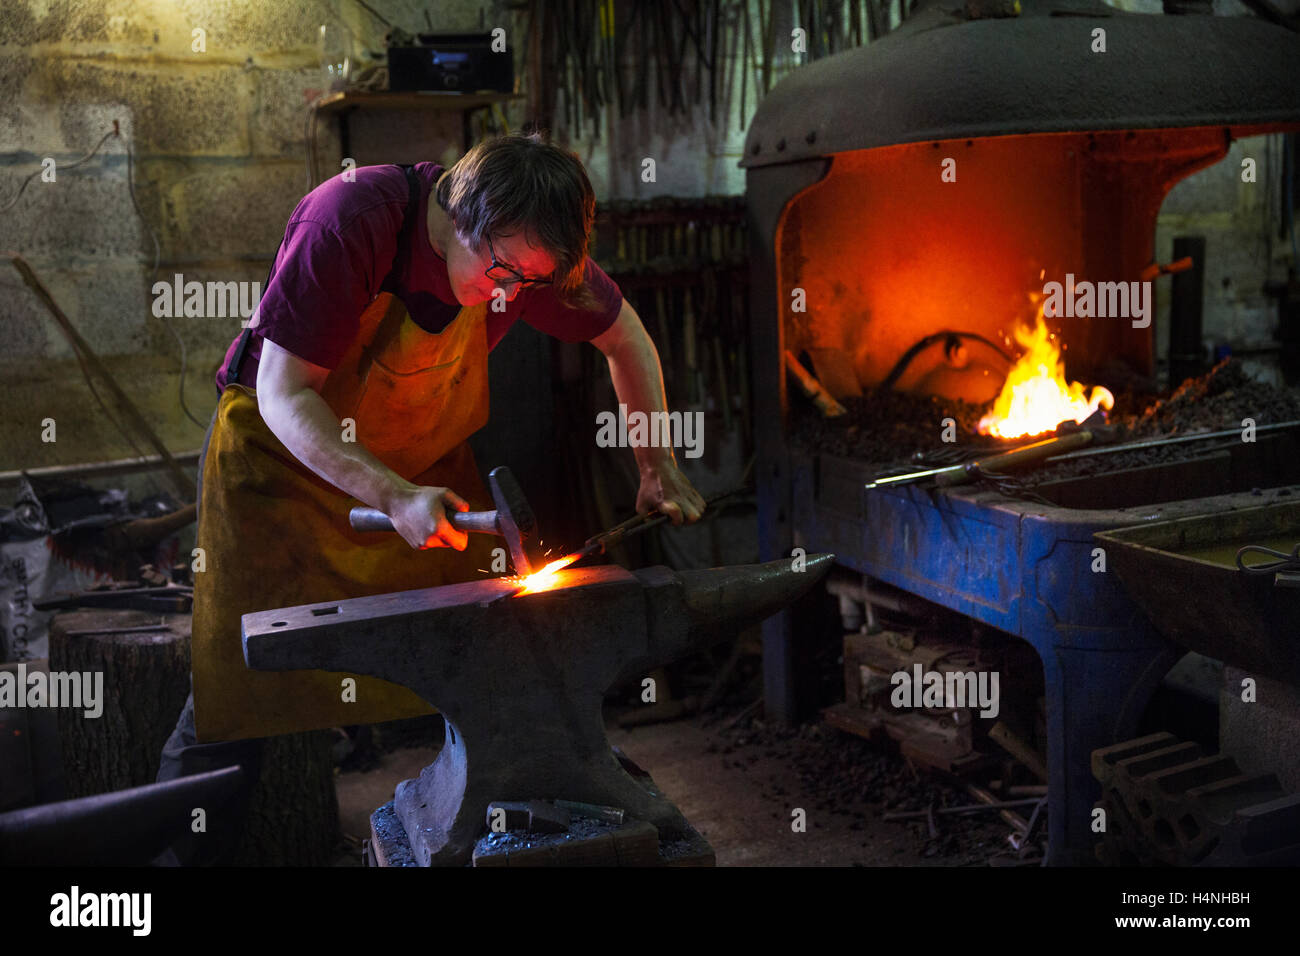 Ein Schmied, auffallend rote Roheisen auf Amboss in einer Werkstatt. Stockfoto